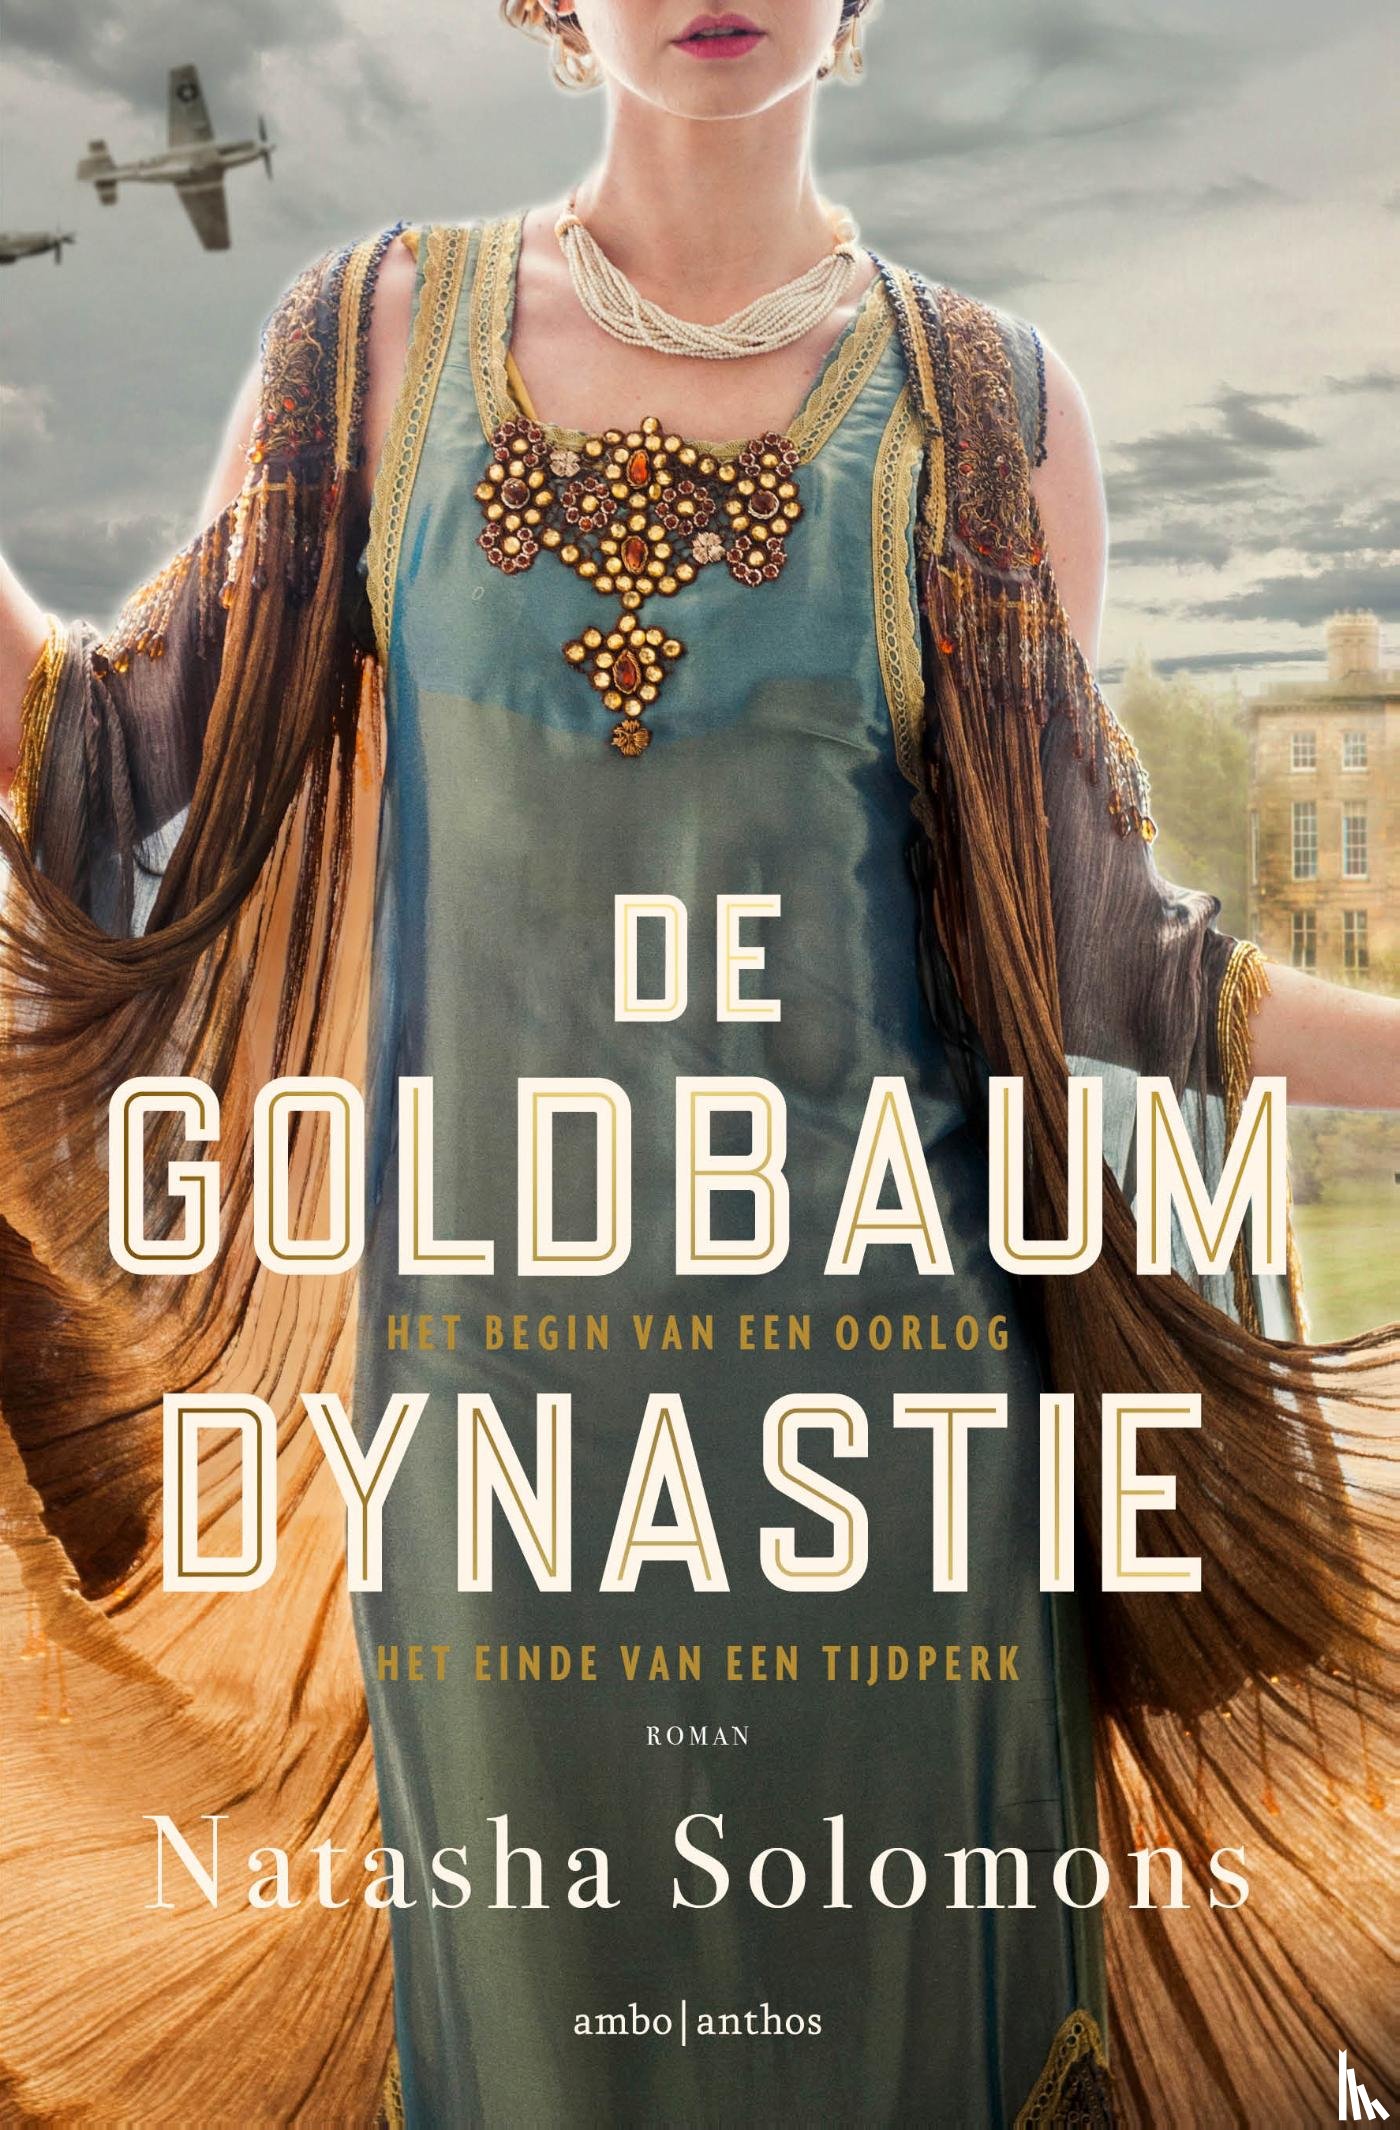 Solomons, Natasha - De Goldbaum dynastie